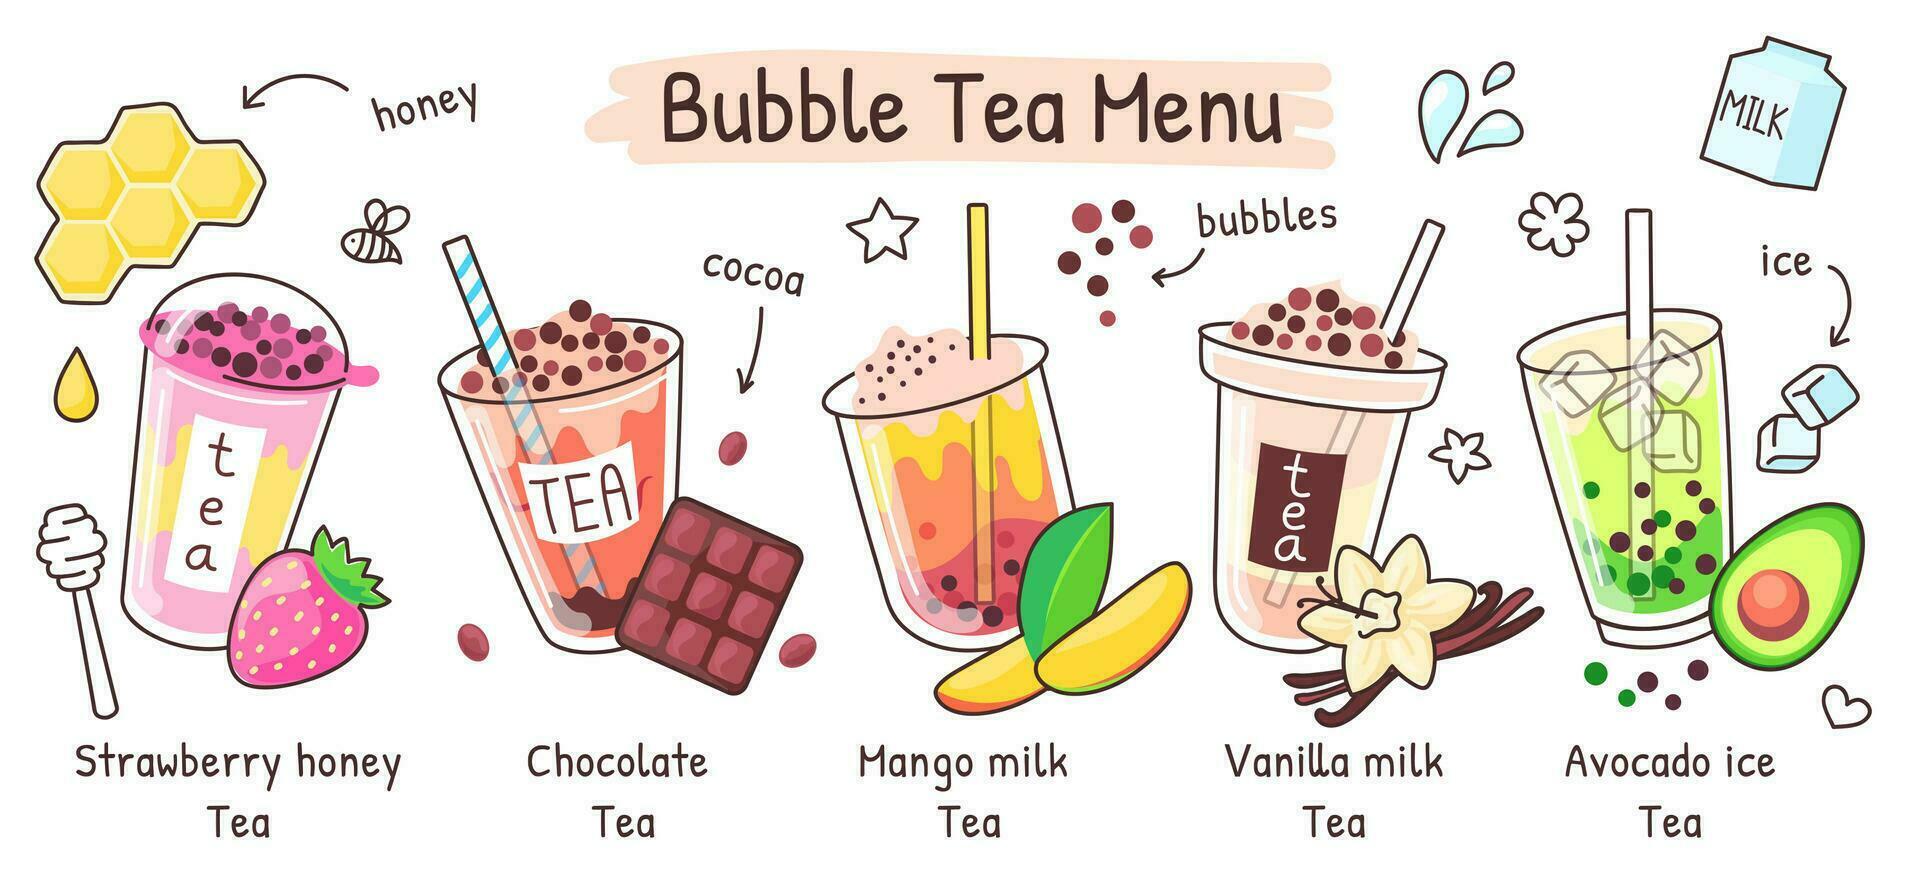 bolla tè menù, boba bevanda nel diverso sapori. estate ghiacciato tè con tapioca perle, Taiwan perla latte bevande negozio vettore illustrazione